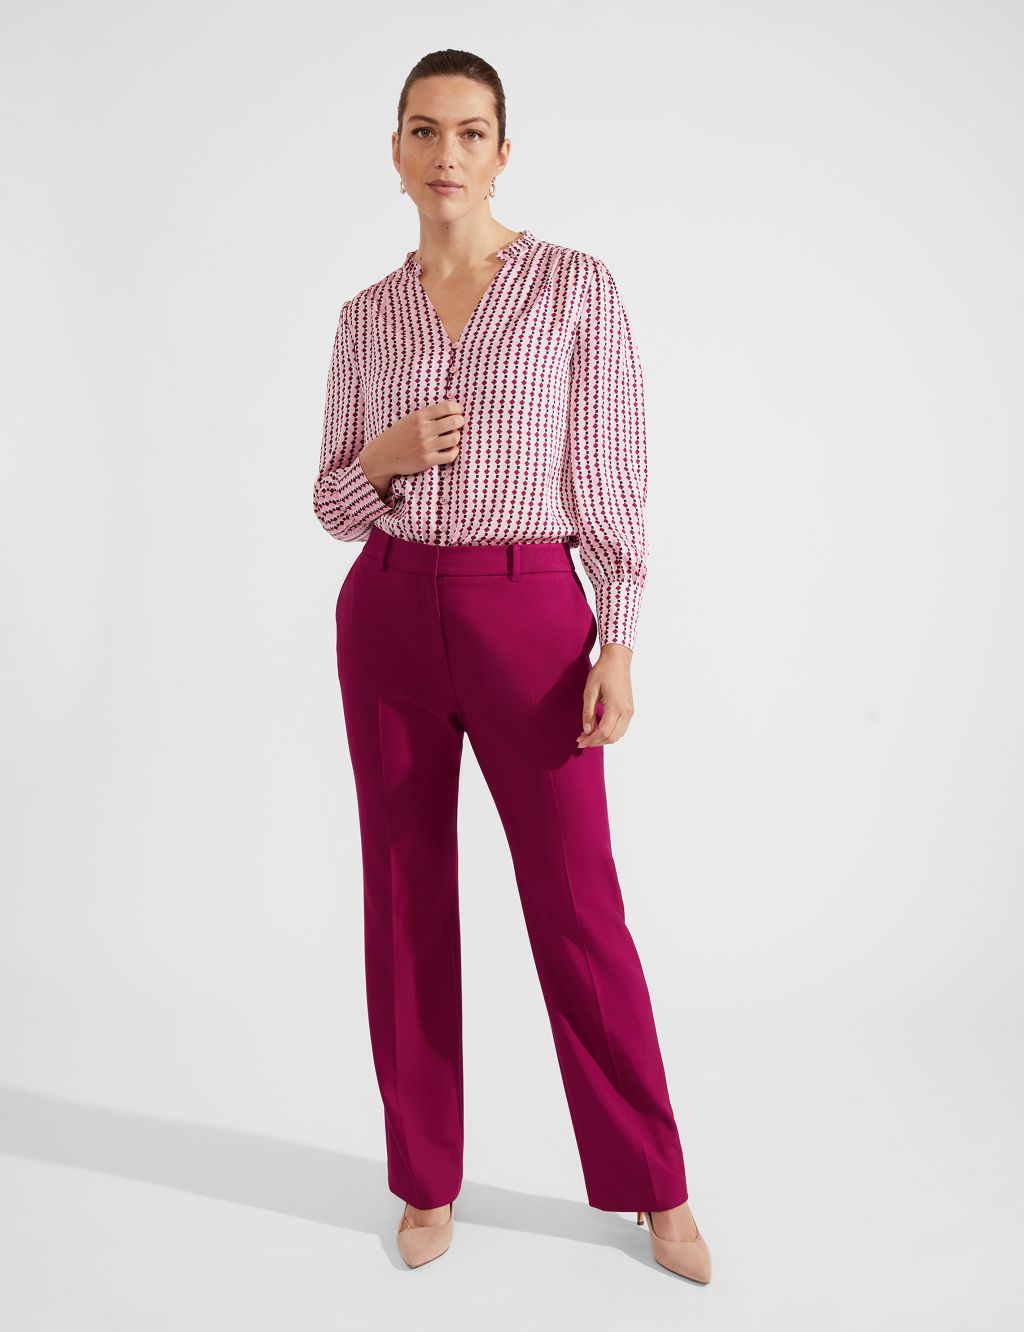 Buy Dollar Women's Missy Pack of 1 M Purple Color Slim fit